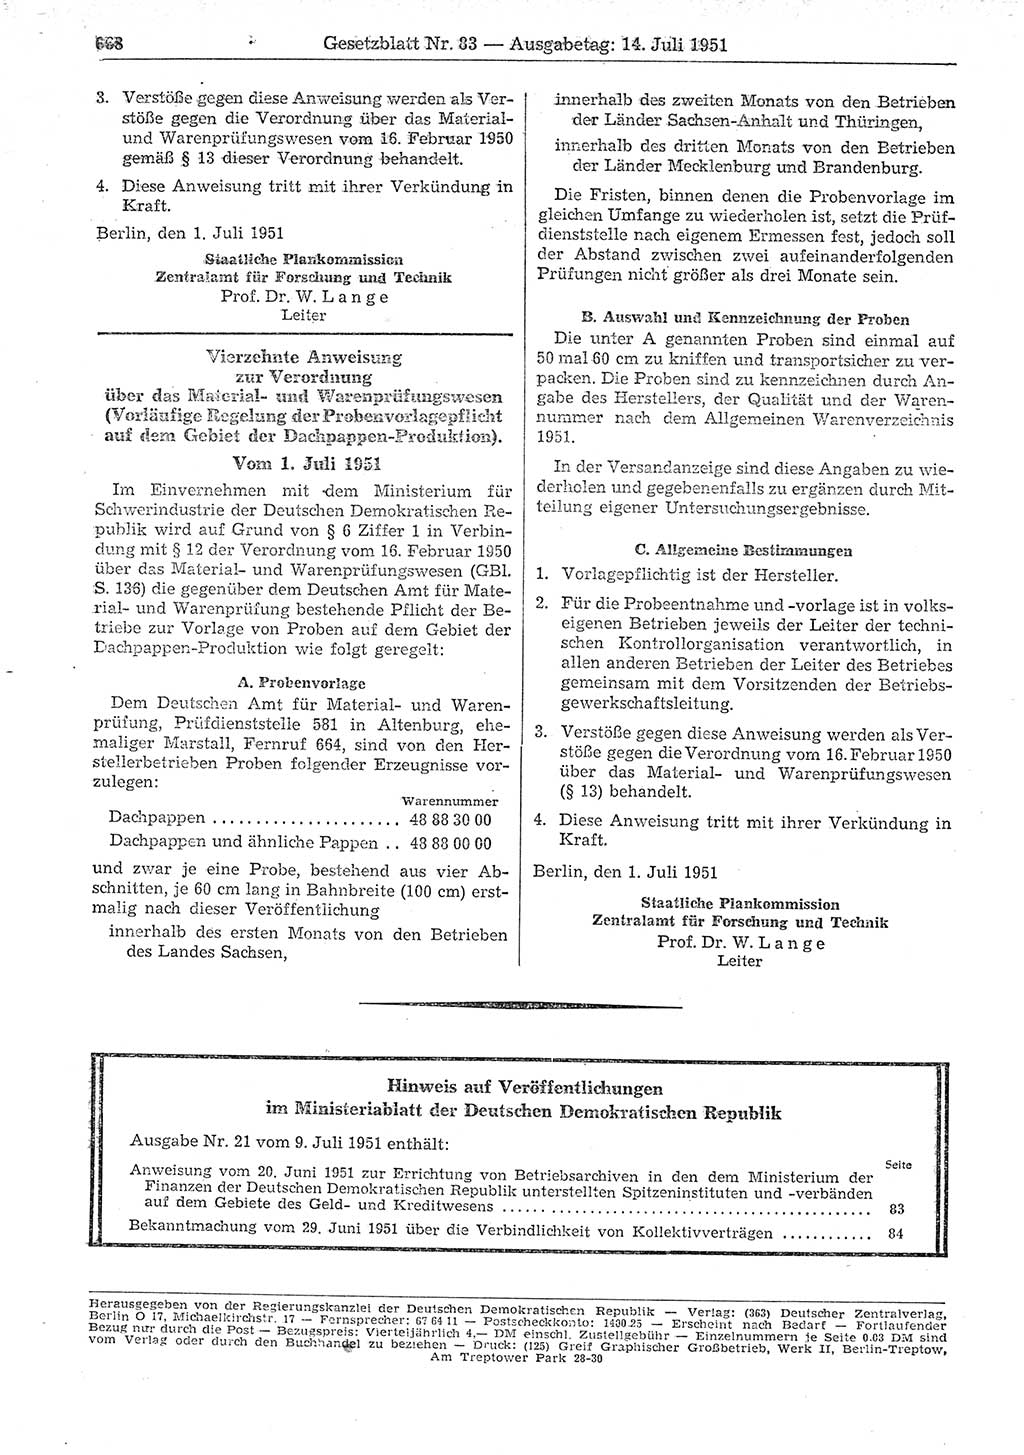 Gesetzblatt (GBl.) der Deutschen Demokratischen Republik (DDR) 1951, Seite 668 (GBl. DDR 1951, S. 668)